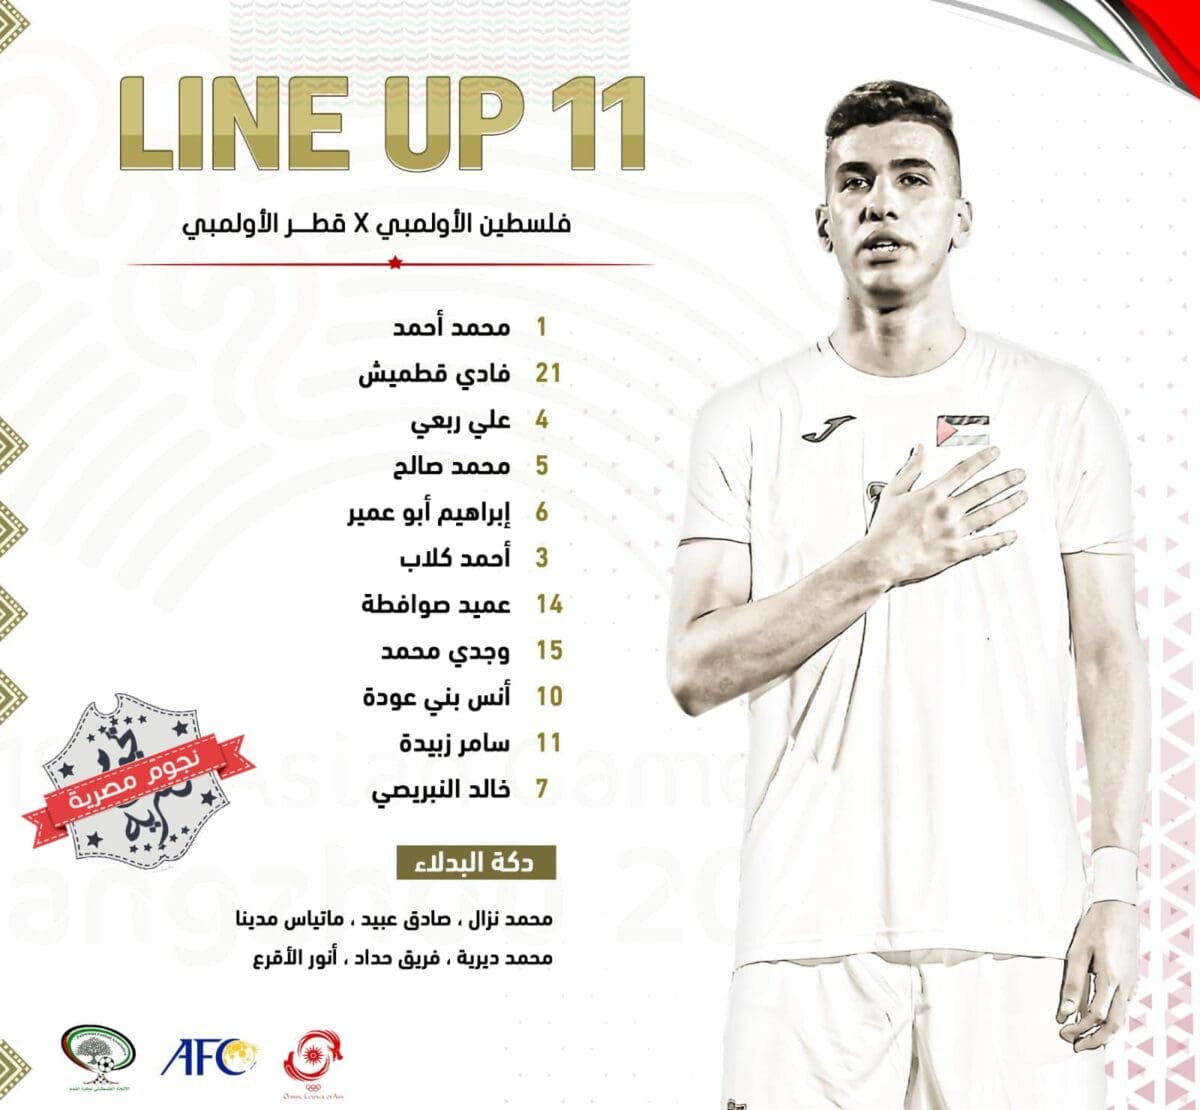 قائمة المنتخب الفلسطيني تحت 23 سنة ضد قطر في أسياد 2022 (مصدر الصورة. حساب الفدائي على فيس بوك)